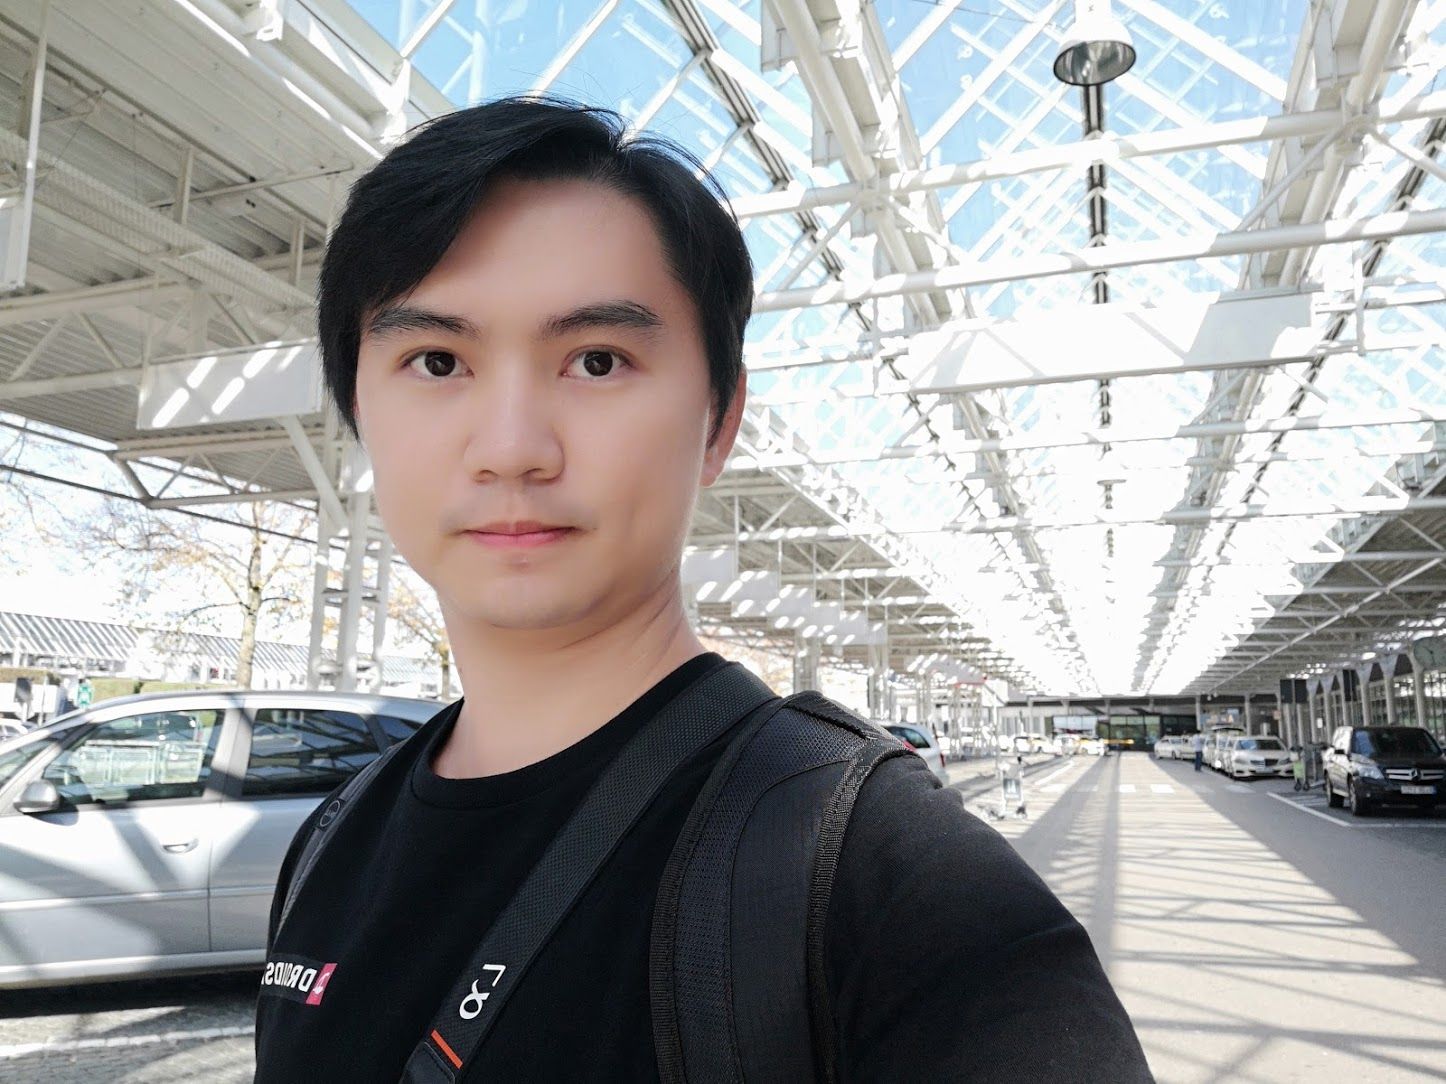 [Preview] พรีวิว Huawei Mate 10 Pro เรือธงปลายปีที่ชูพลังของ AI ในด้านประสิทธิภาพและภาพถ่าย